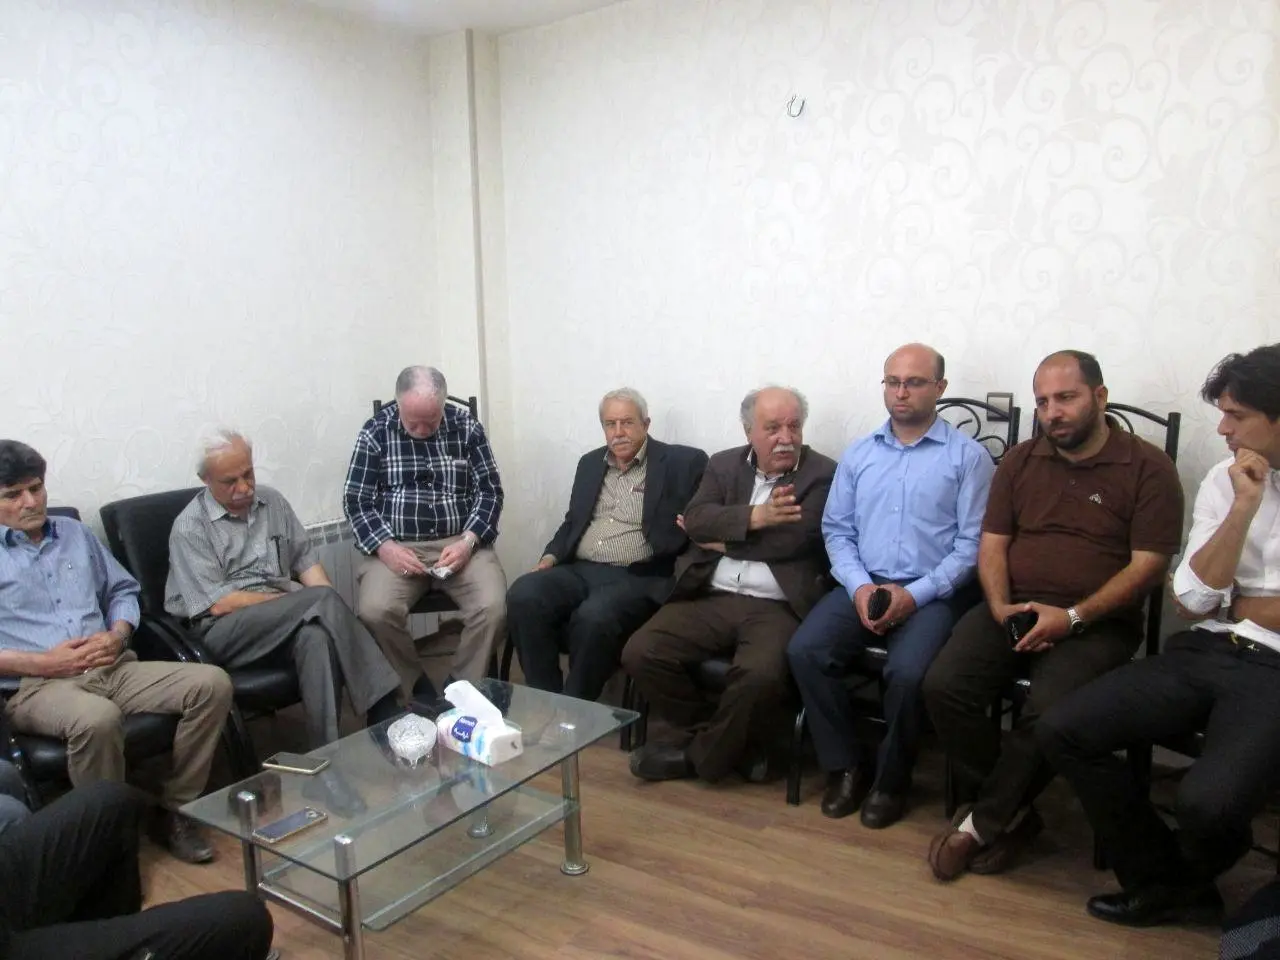 تدابیر منتخبان جدید شورای شهر قزوین برای حل مشکلات حمل‌ونقل 